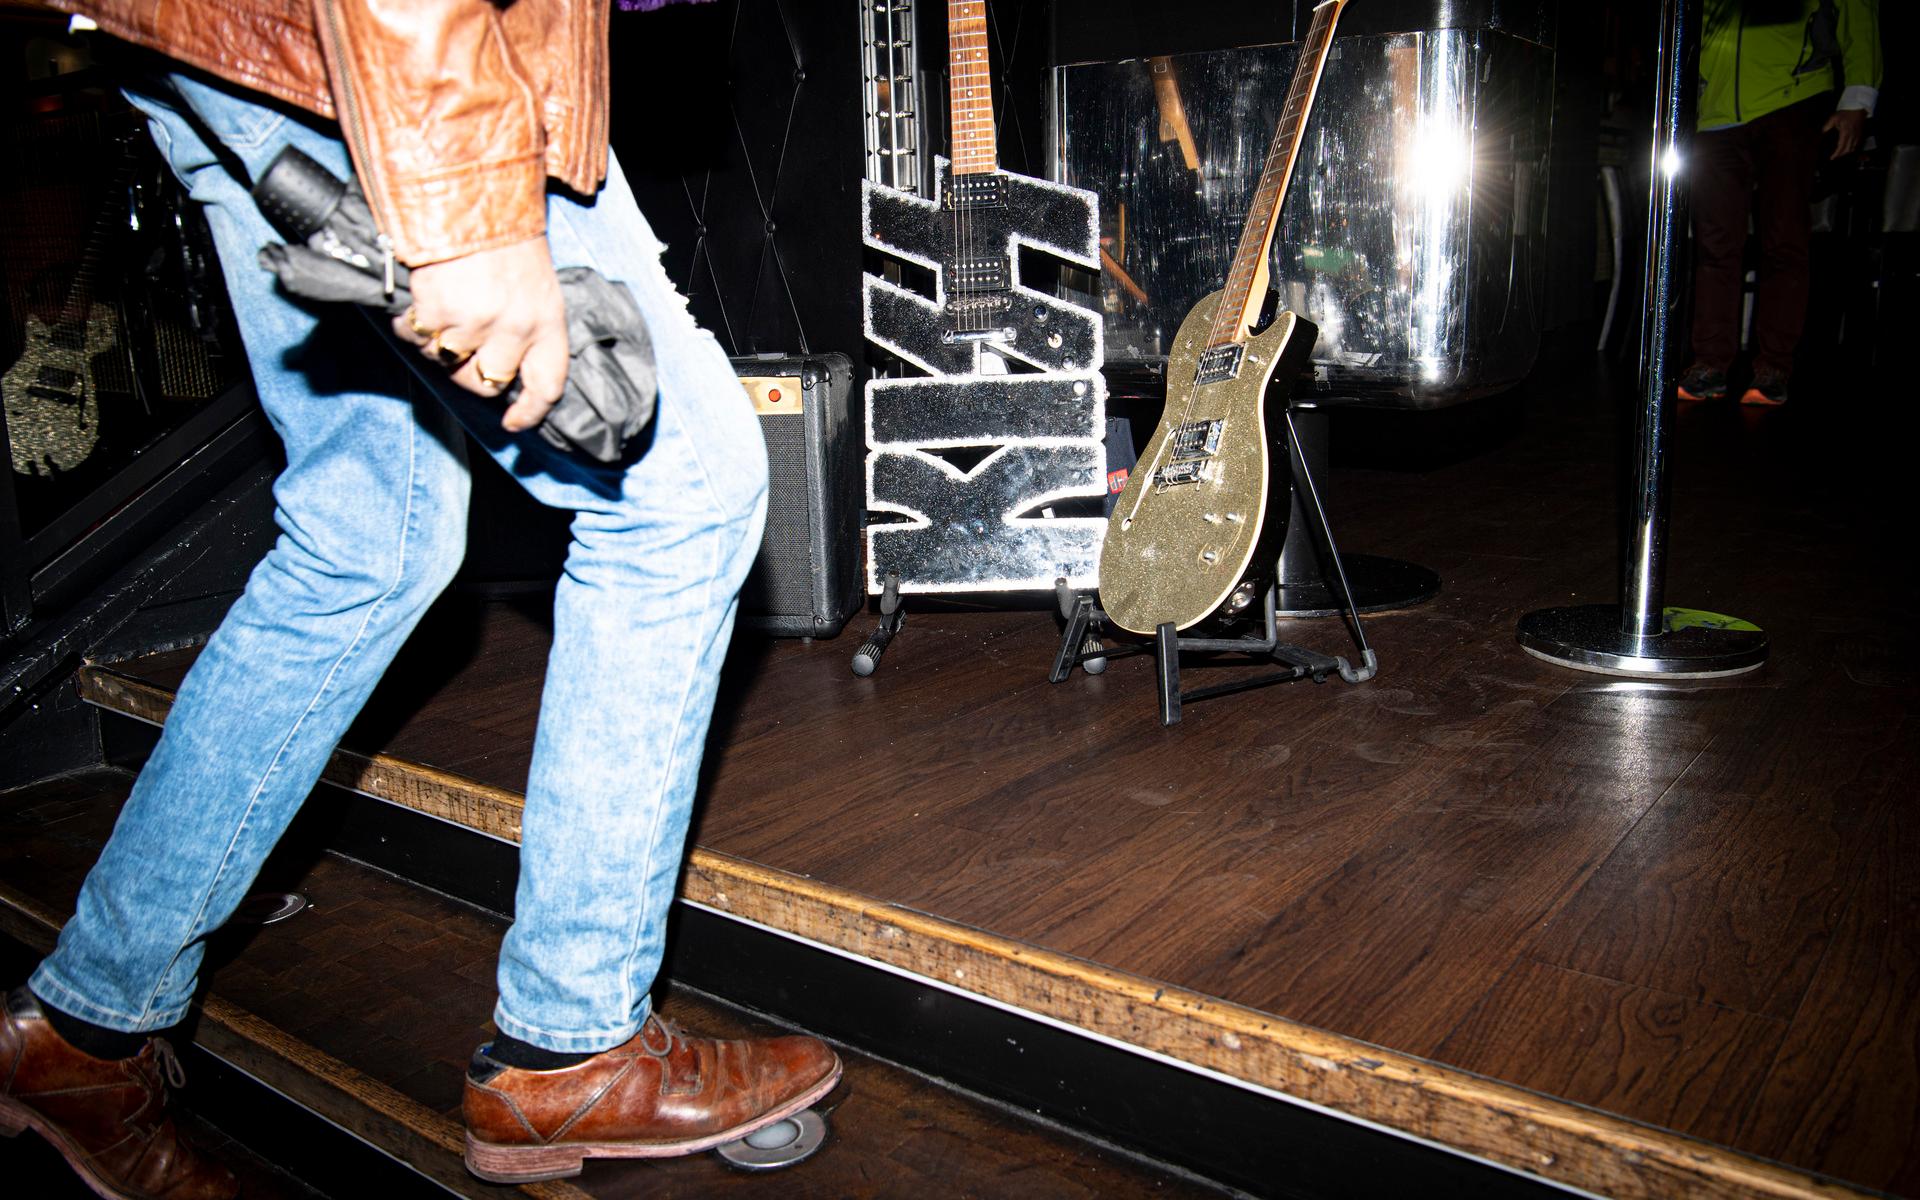 Hard rock café hade laddat med Kissattiraljer inför vad som sägs bli bandets sista Sverige-gig någonsin